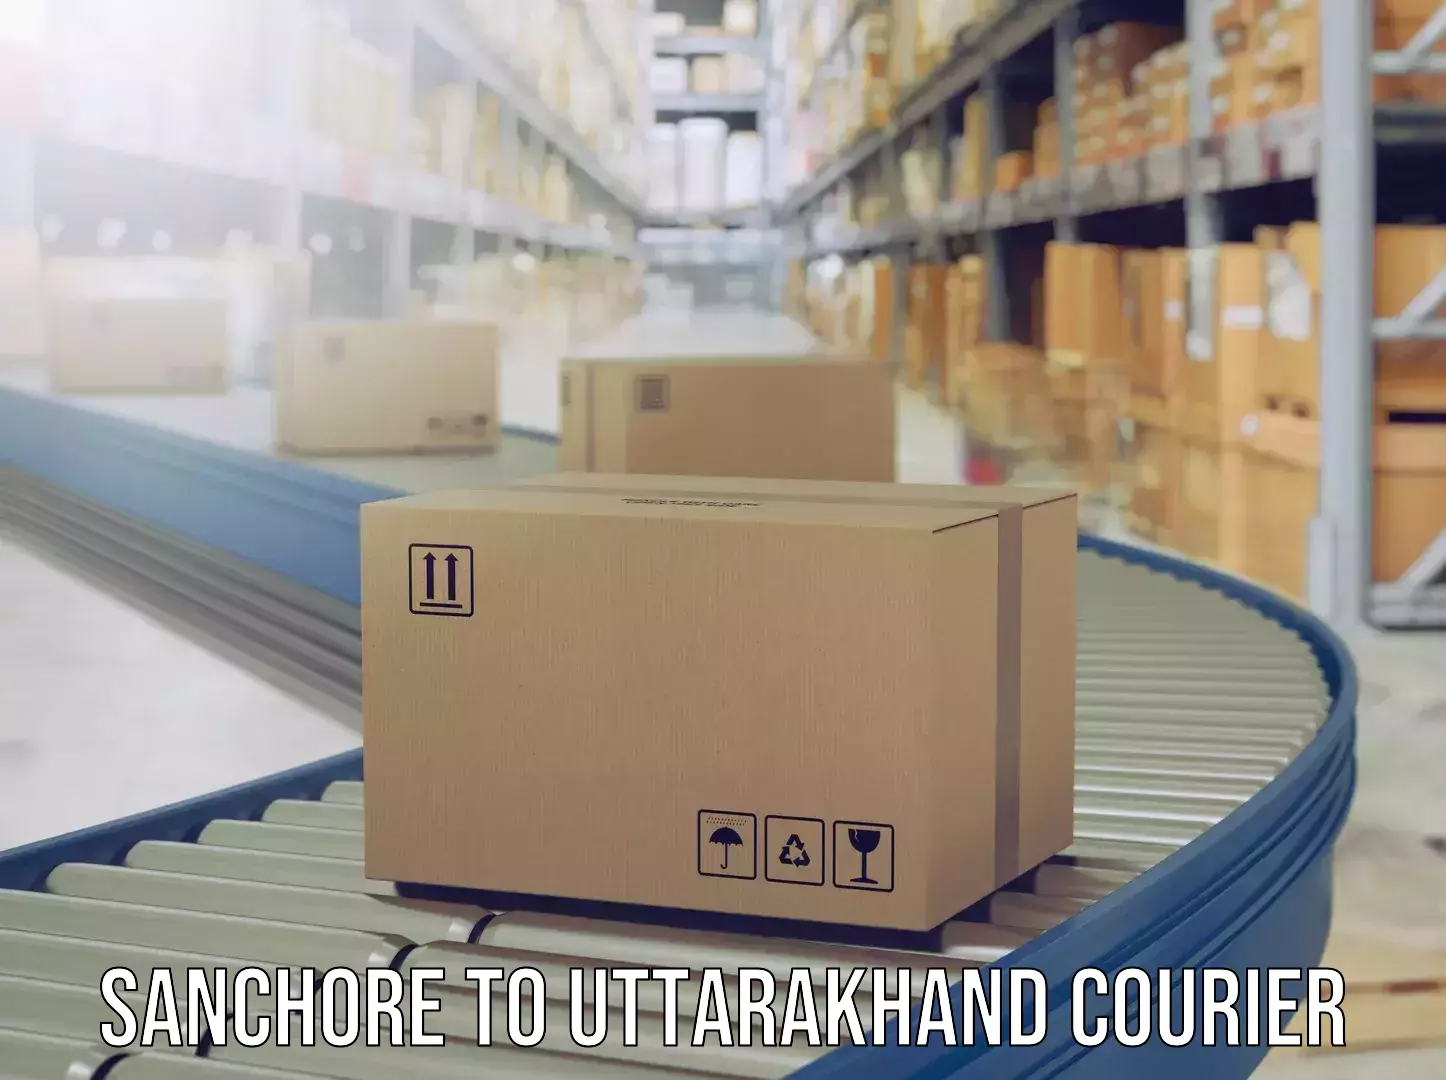 Hassle-free luggage shipping Sanchore to Uttarakhand